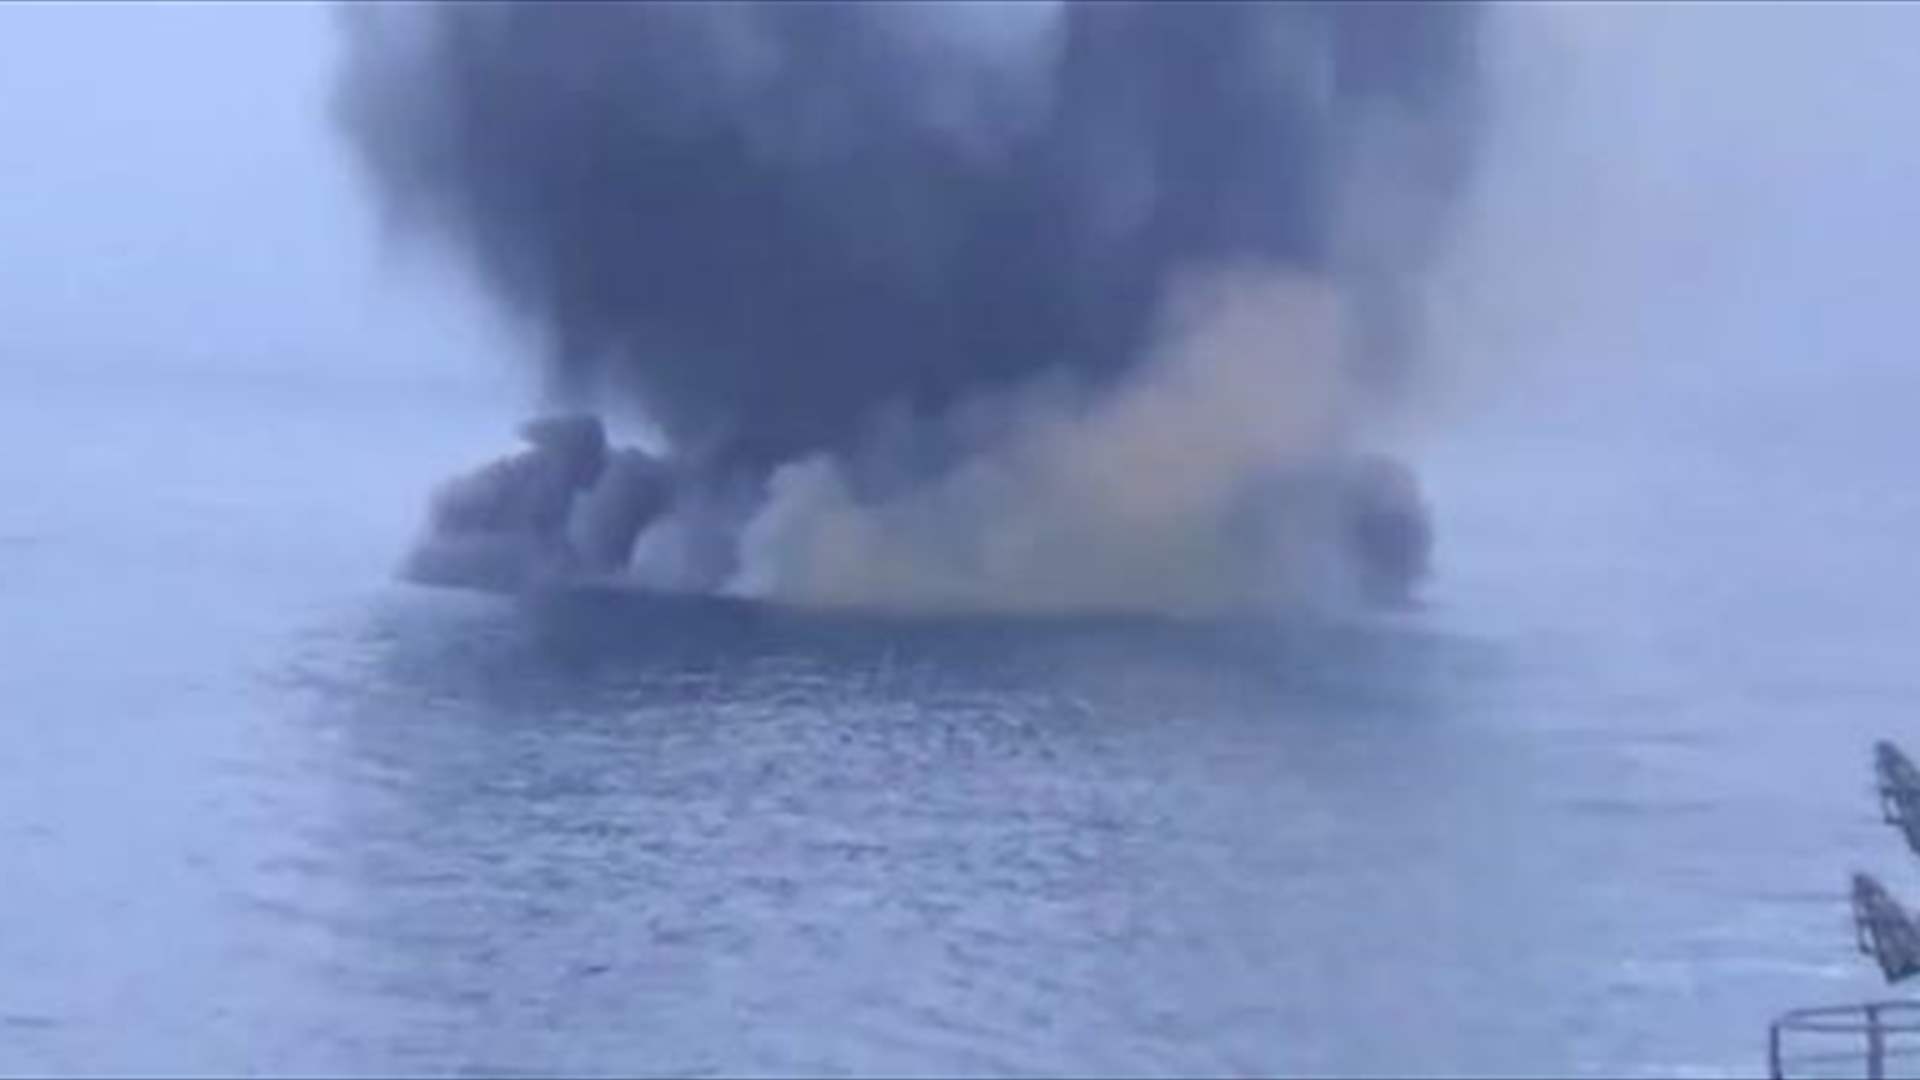 ثمانية جرحى بالقرب من خيرسون وخاركيف وروسيا تضرب مسيّرات بحرية في البحر الأسود